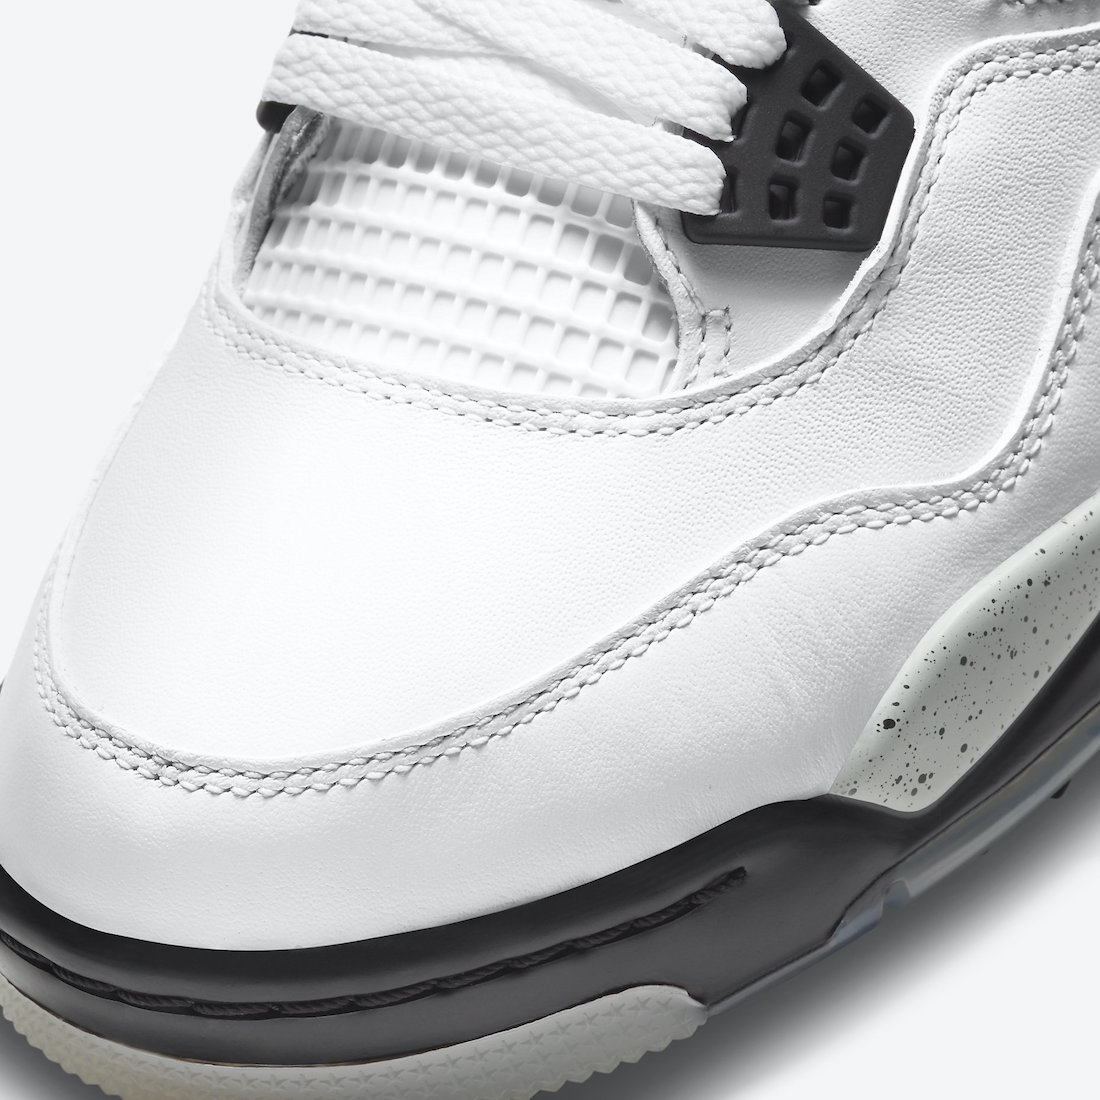 Air Jordan 4 Golf White Cement CU9981-100 Release Date